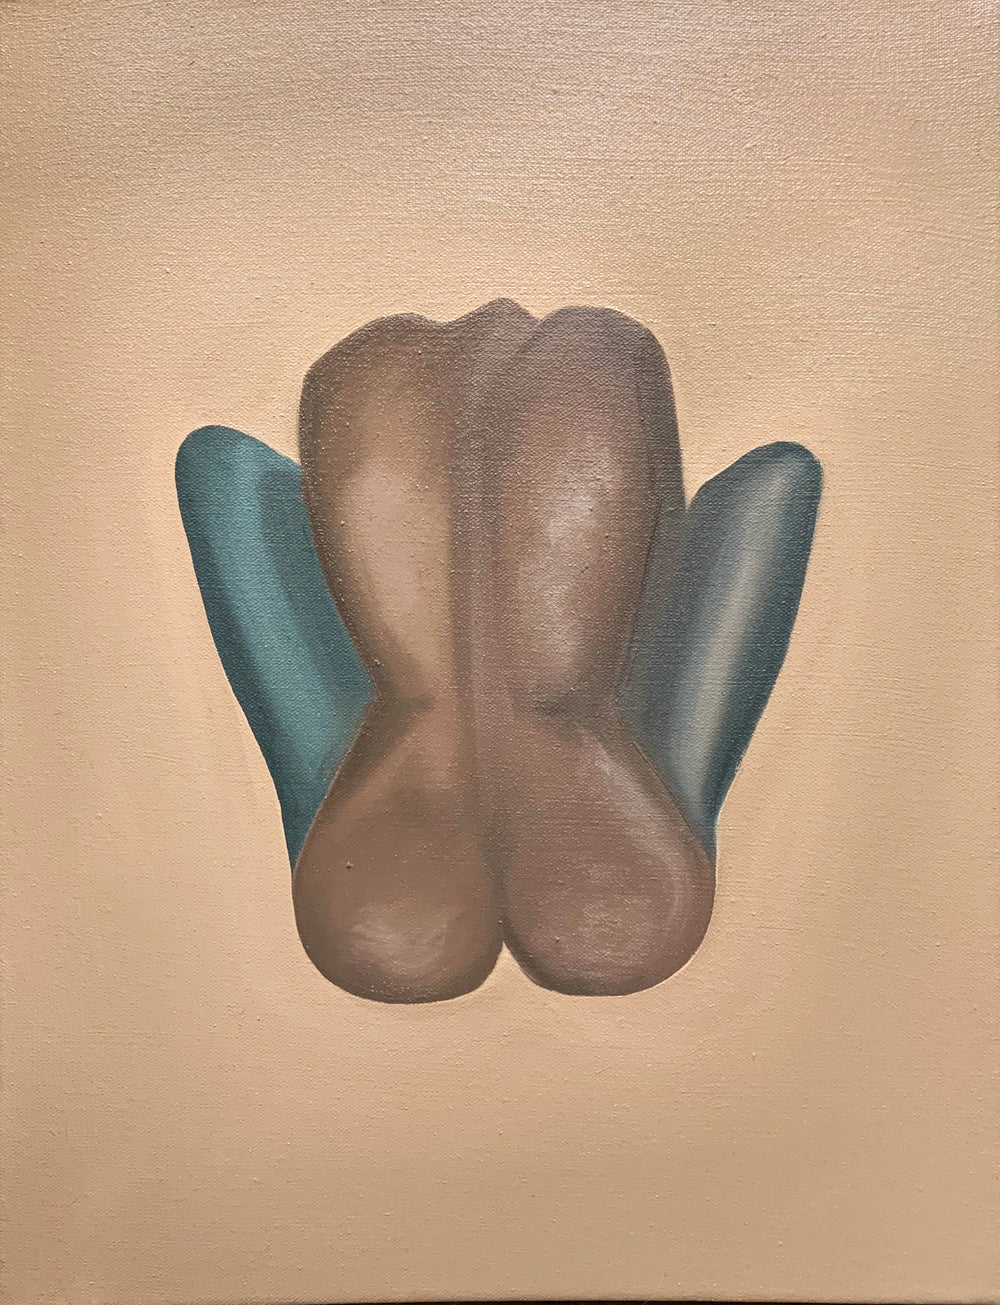 Female figure artwork in a neutral palette